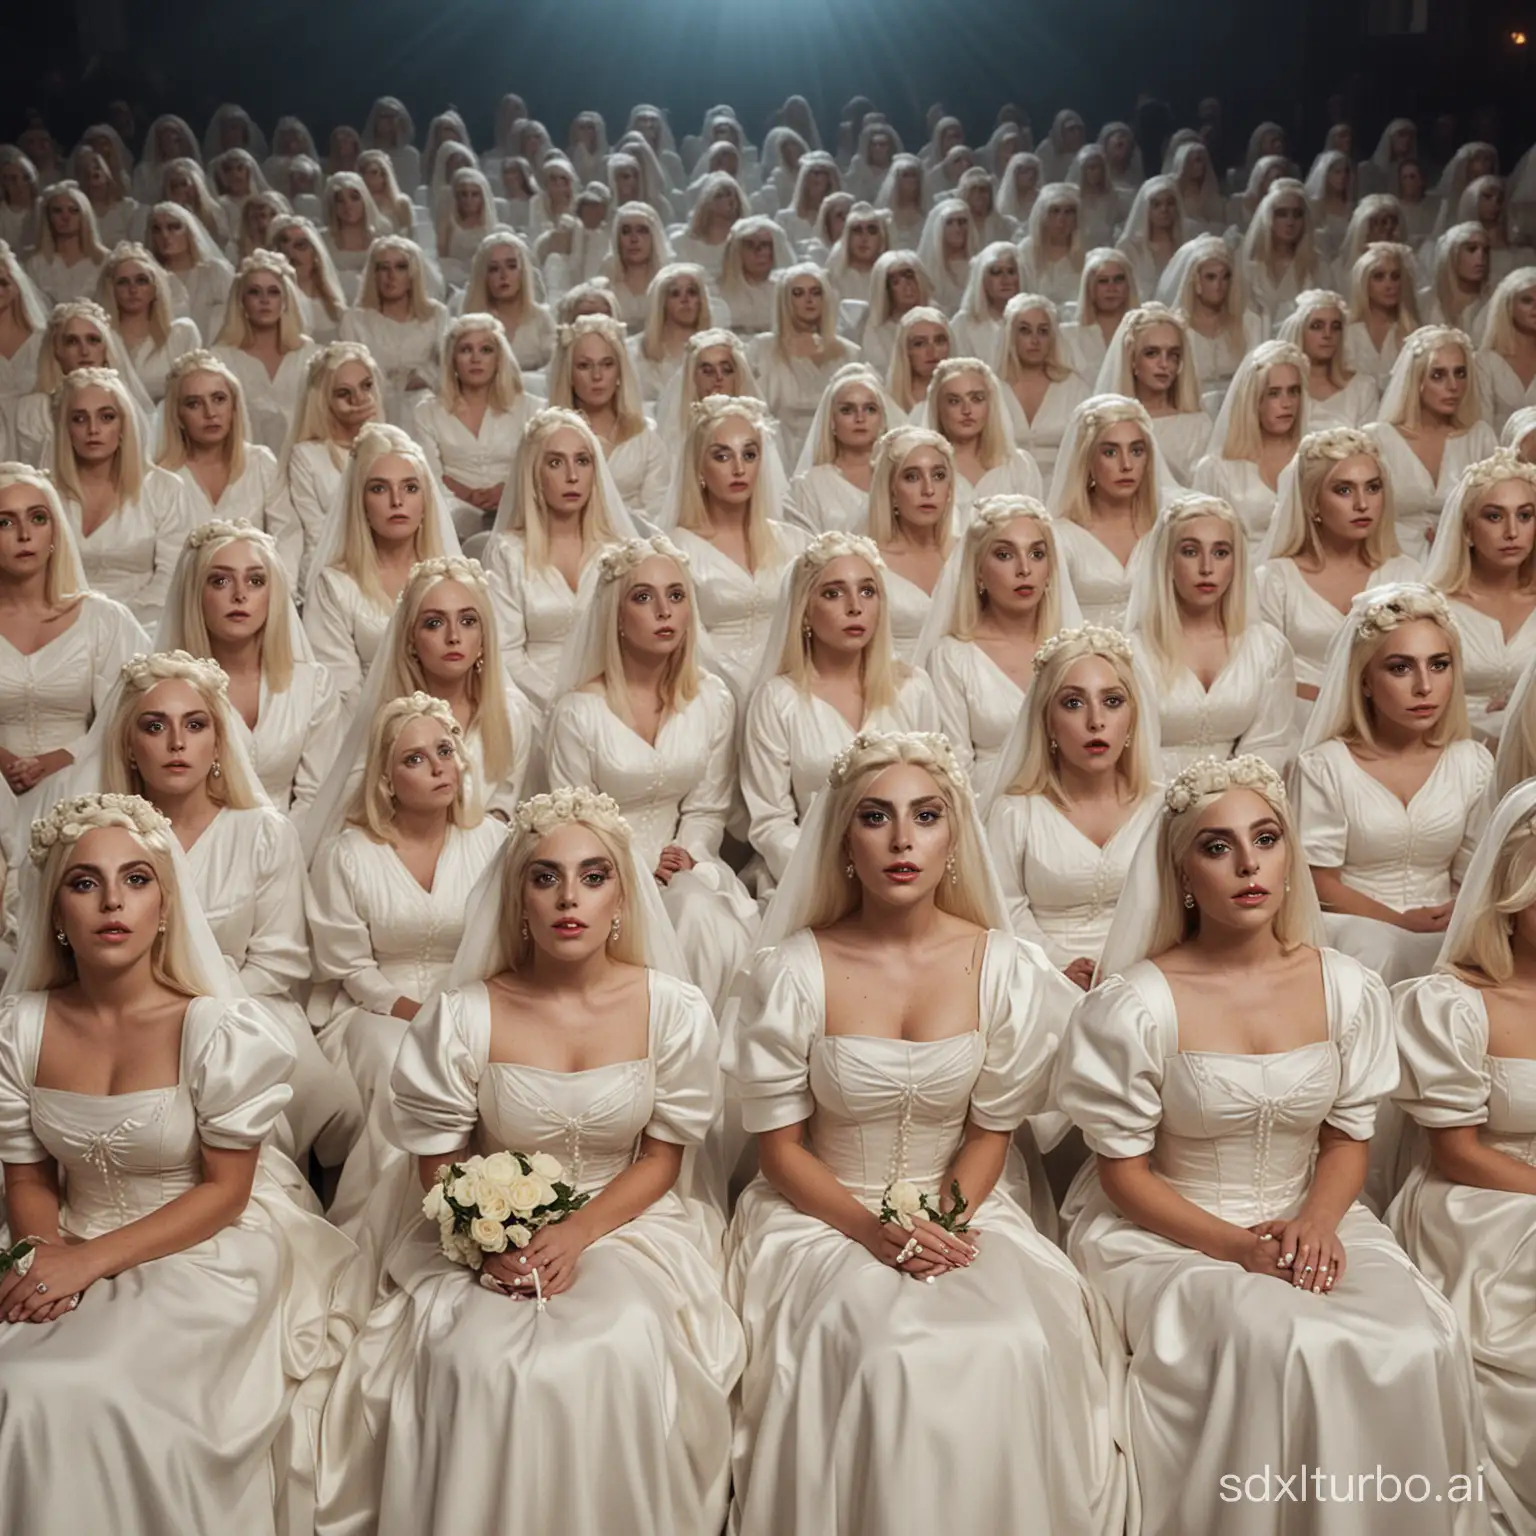 Multidao de lady gaga e suas clones vestidas de noivas reunidas sentadas no cinema